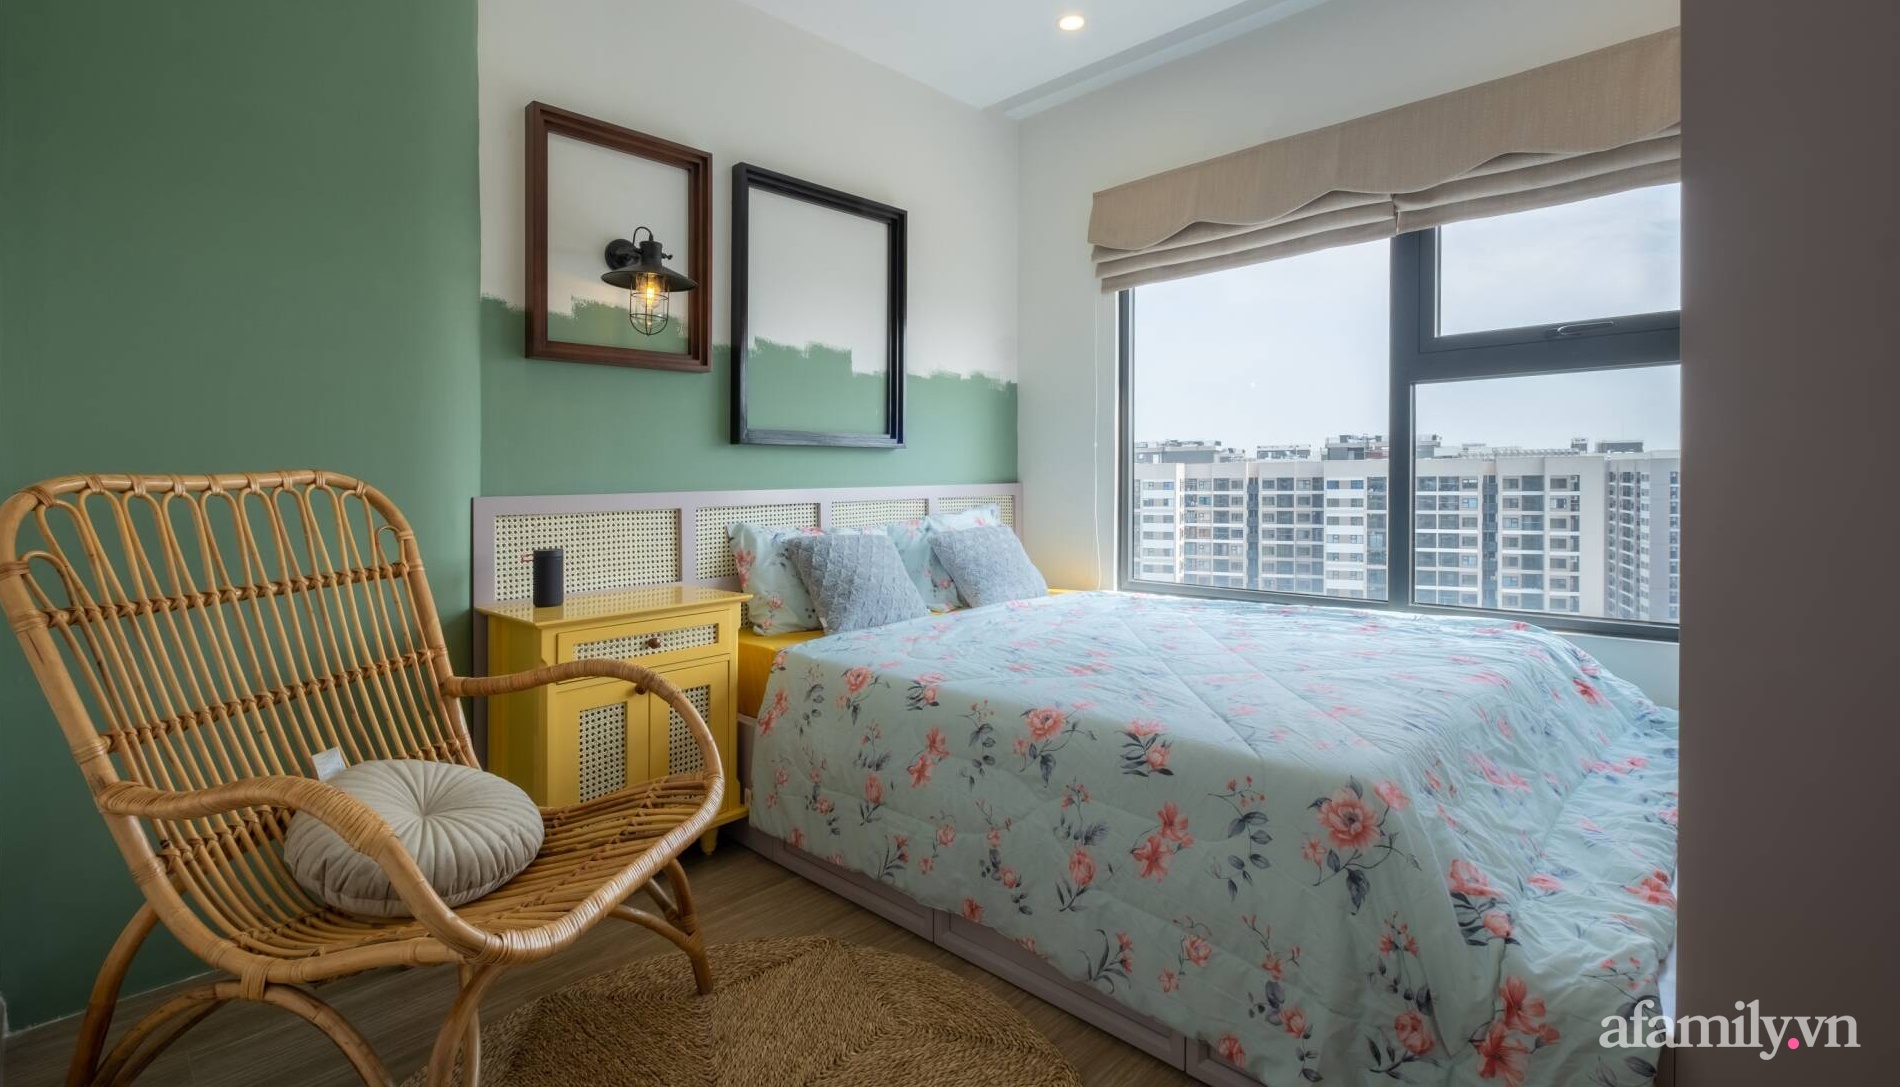 Căn hộ 3 phòng ngủ đẹp tinh tế với phong cách Indochine ở Vinhomes Ocean Park, Hà Nội - Ảnh 10.